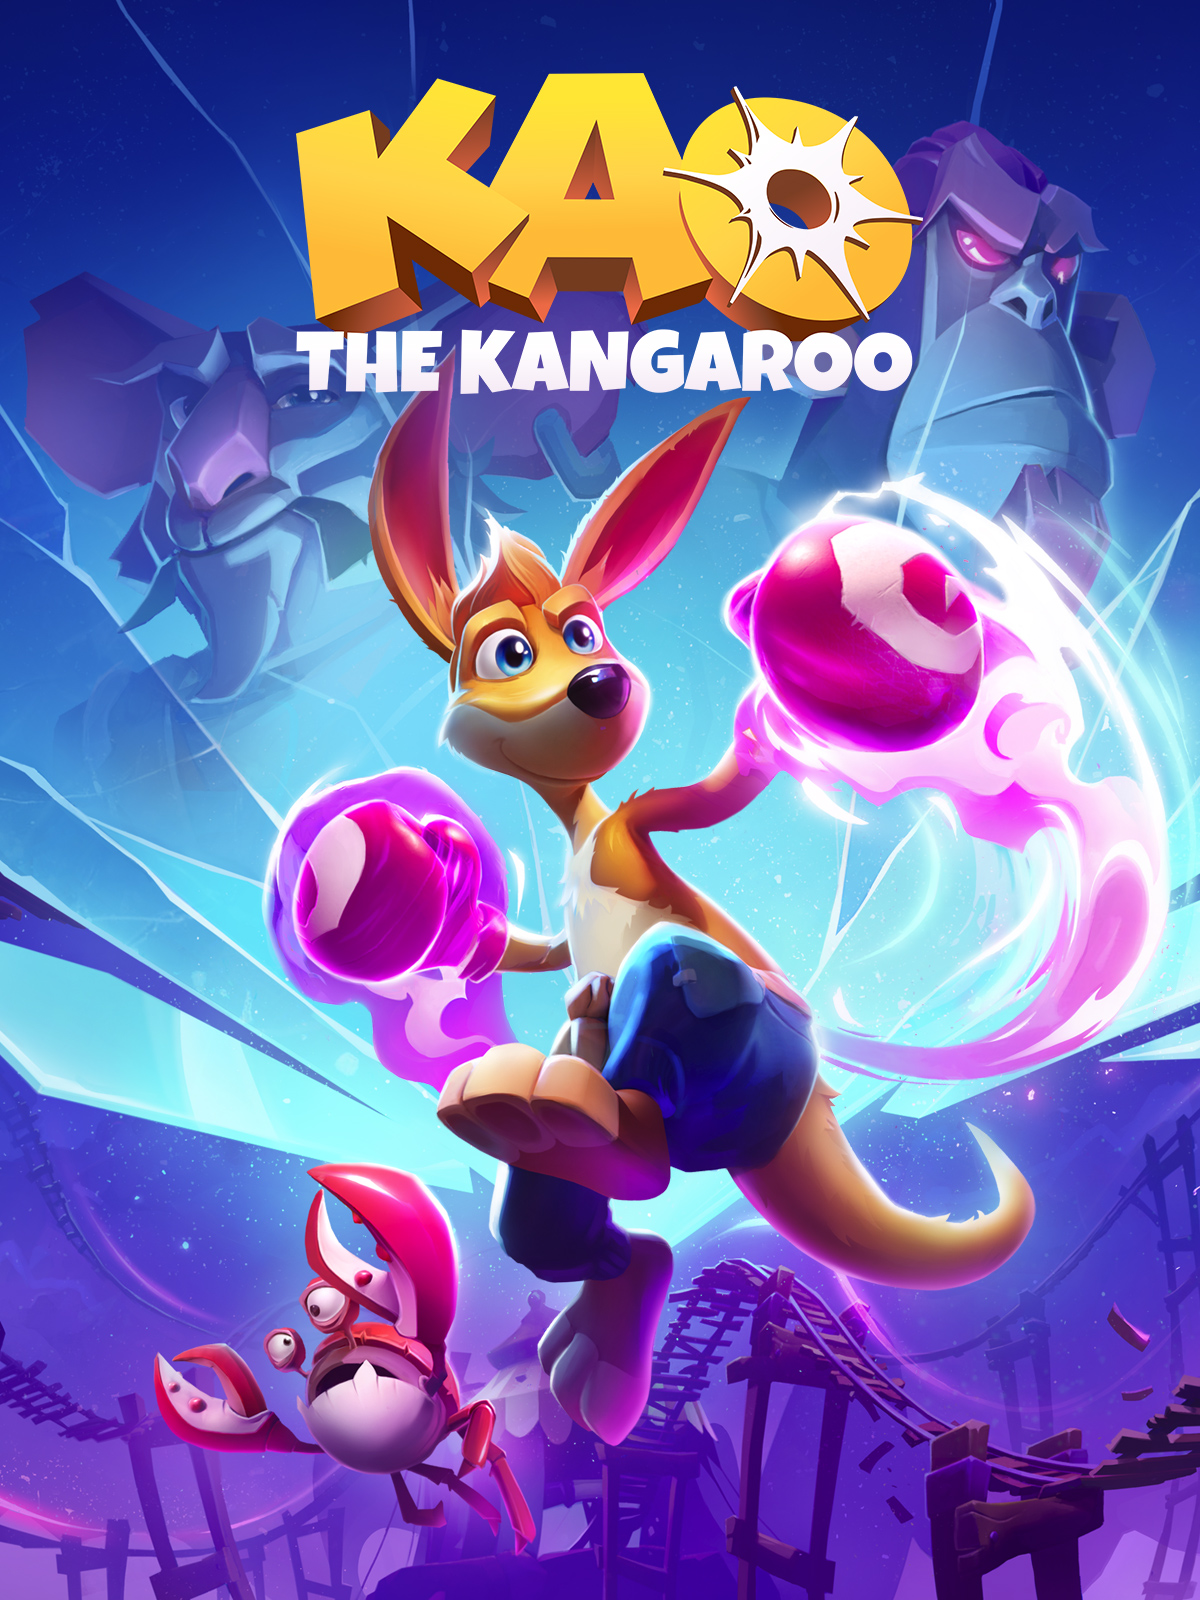 Kao the Kangaroo